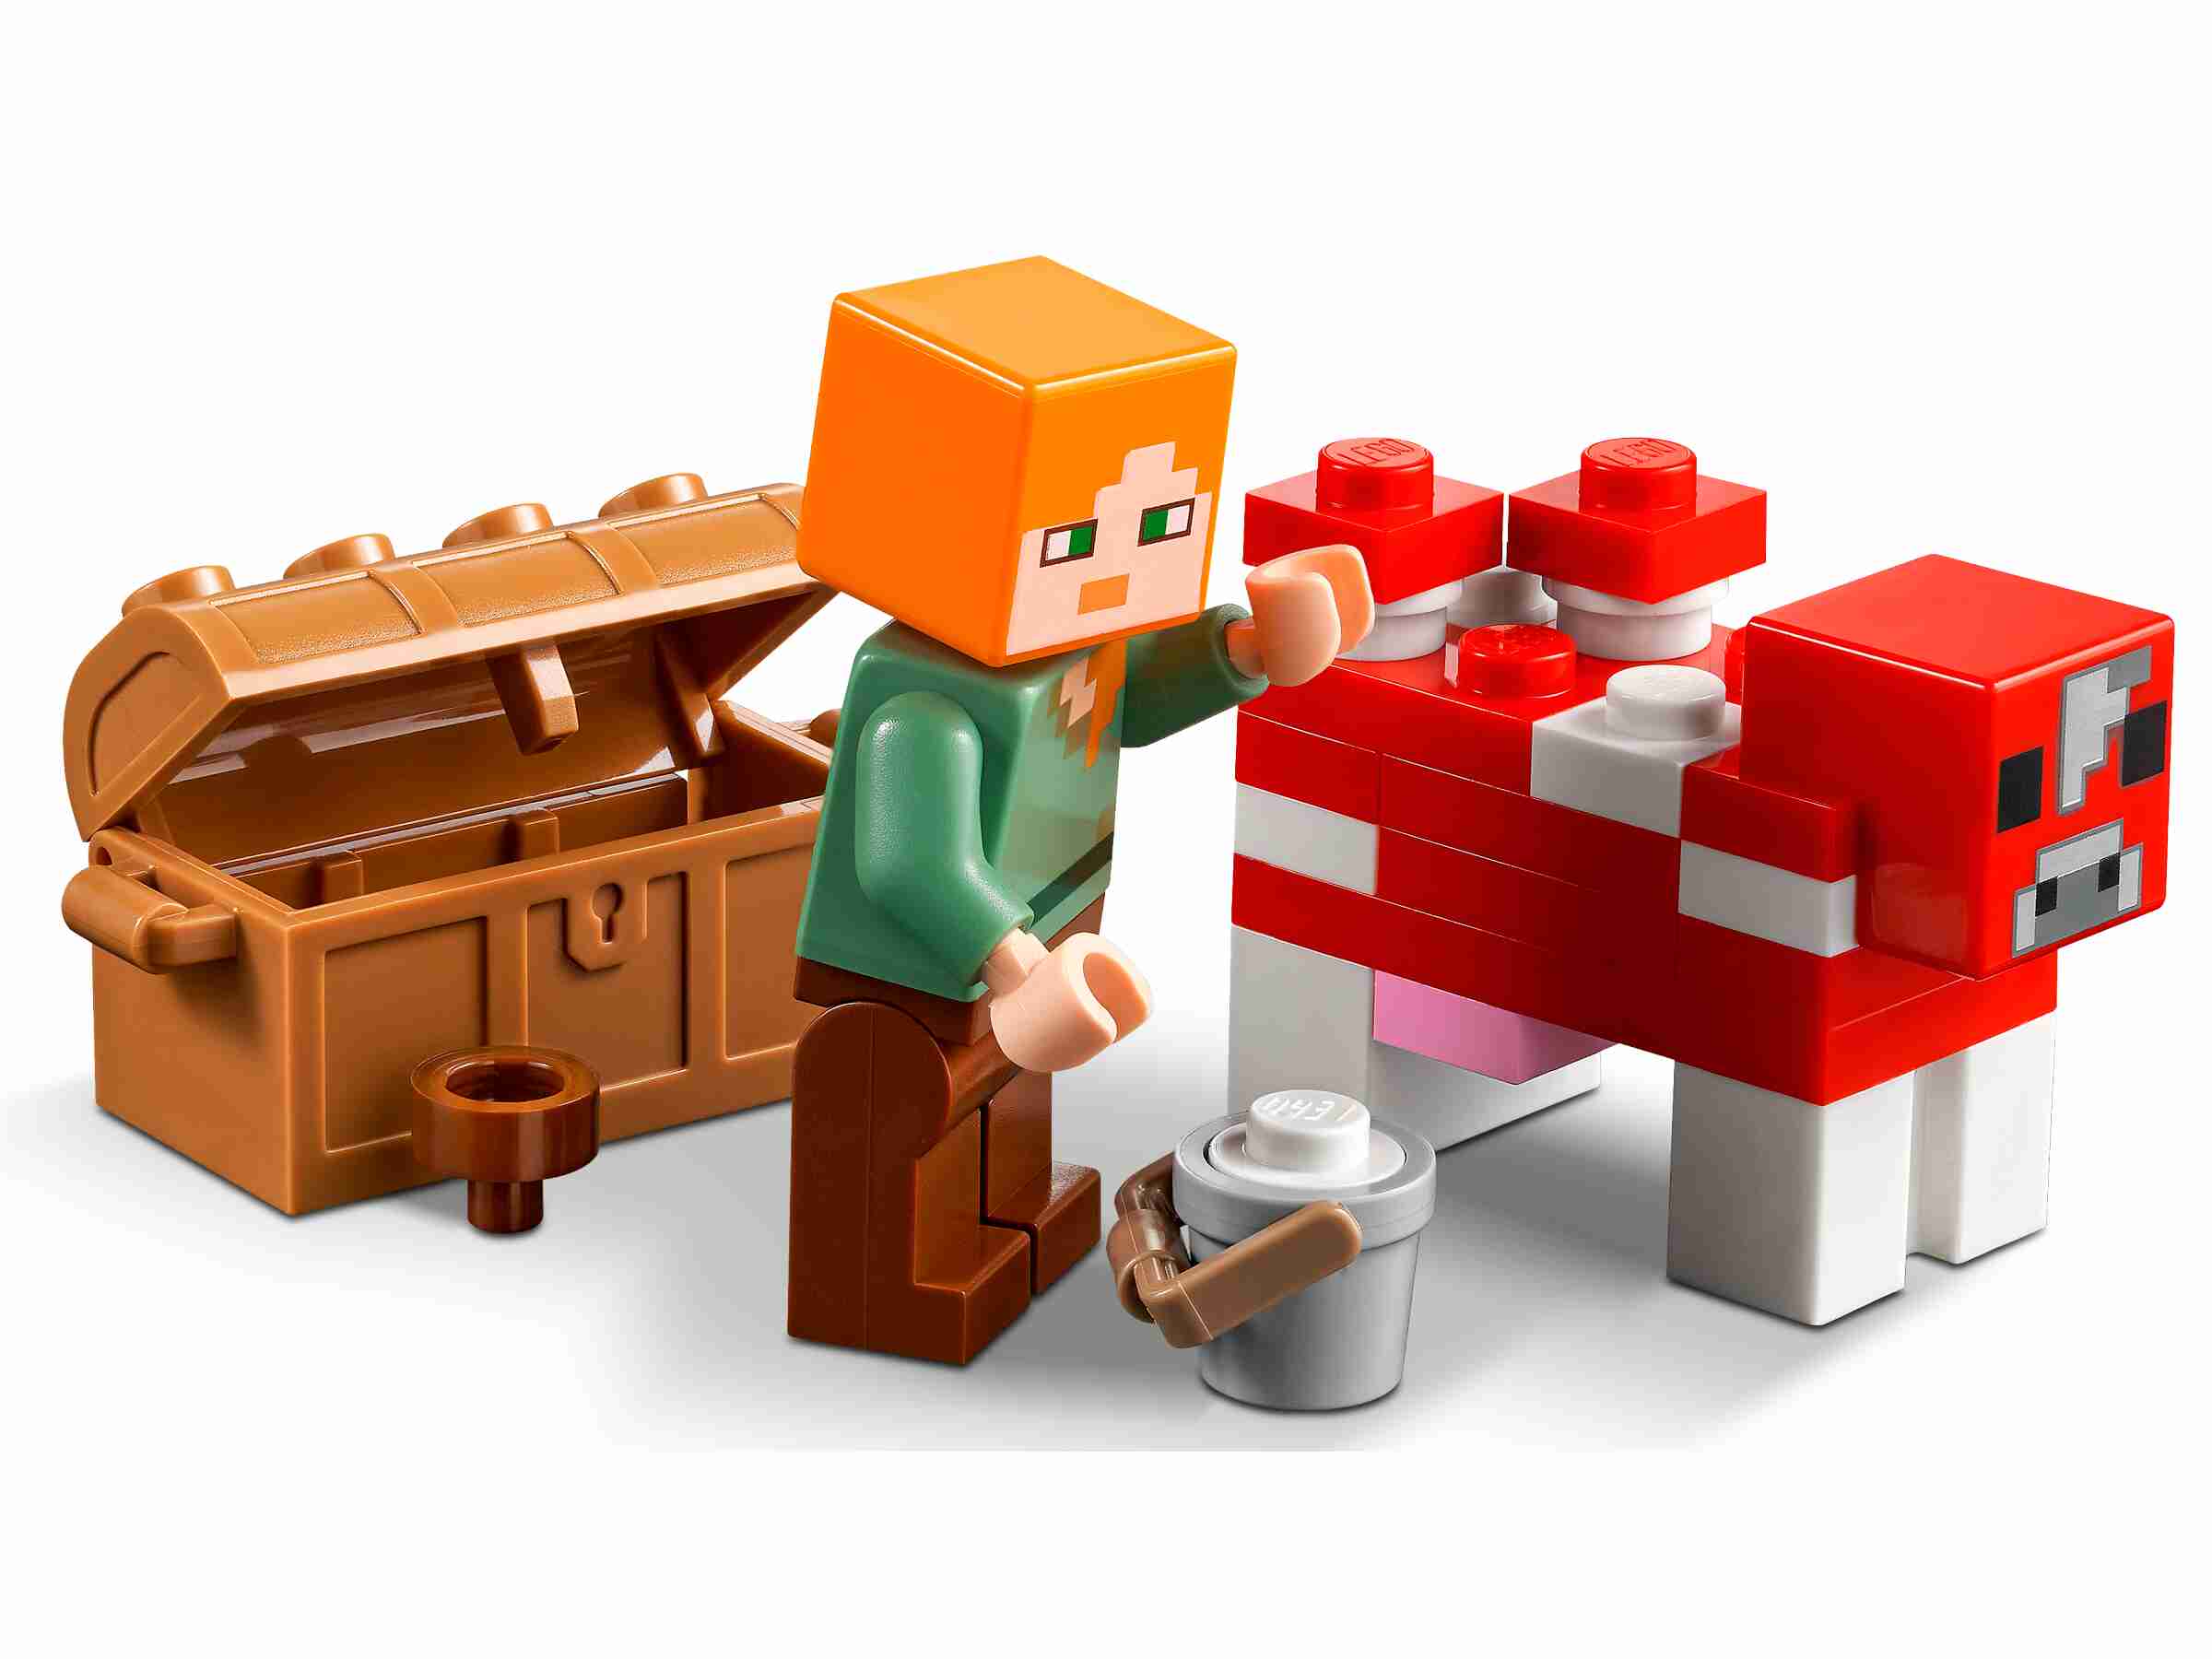 LEGO 21179 Minecraft Das Pilzhaus, mit Alex, Mooshroom & Spinnenreiter